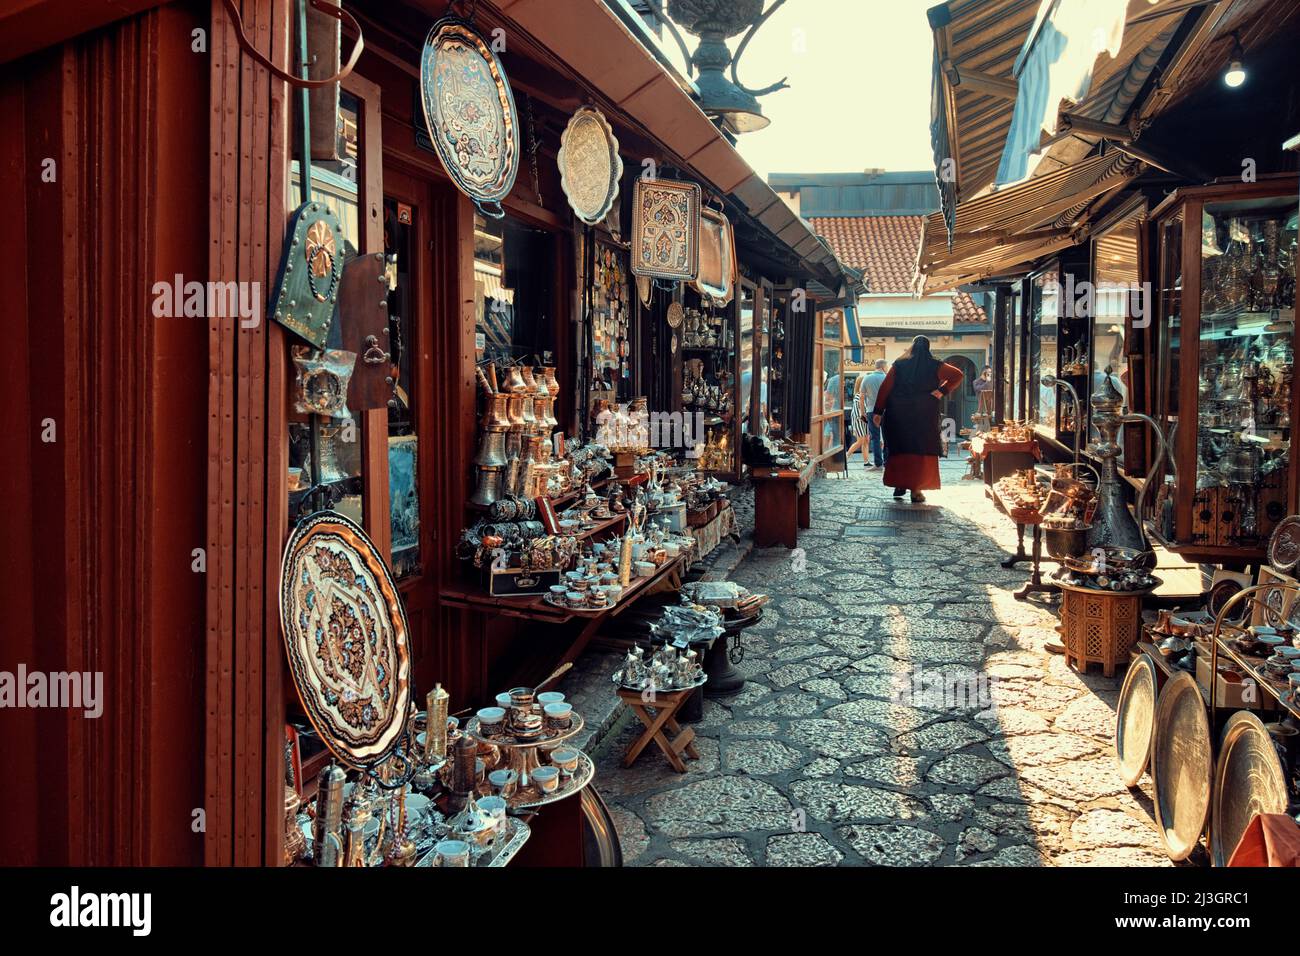 SARAJEVO, BOSNIA AND HERZEGOVINA - JULY 14, 2018: muslim woman walking in Old Sarajevo street bazaar Stock Photo